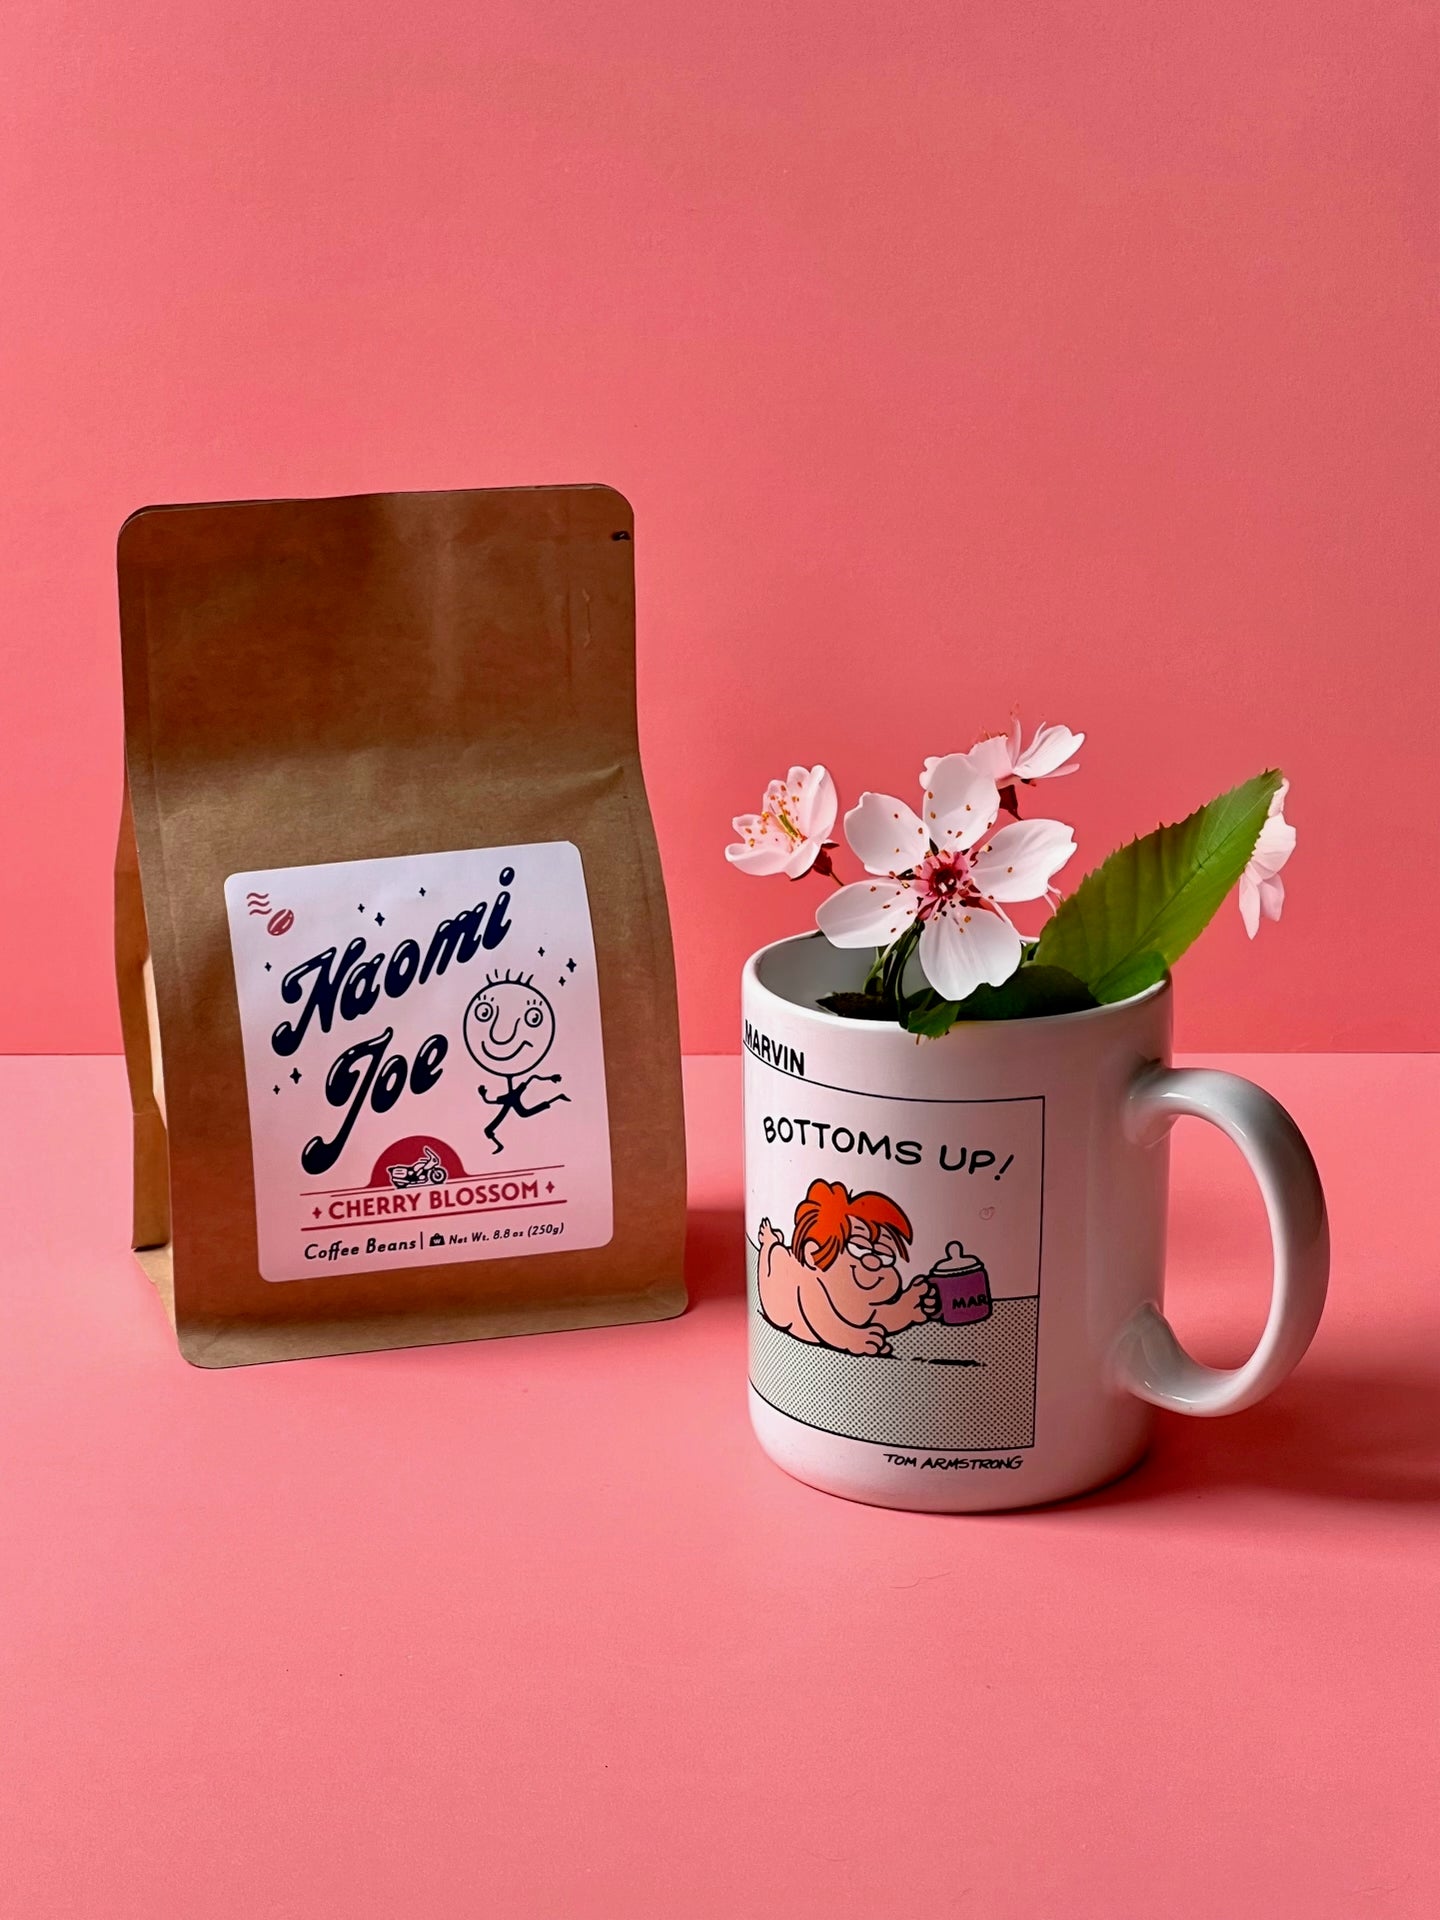 Cherry Blossom - Naomi Joe Coffee